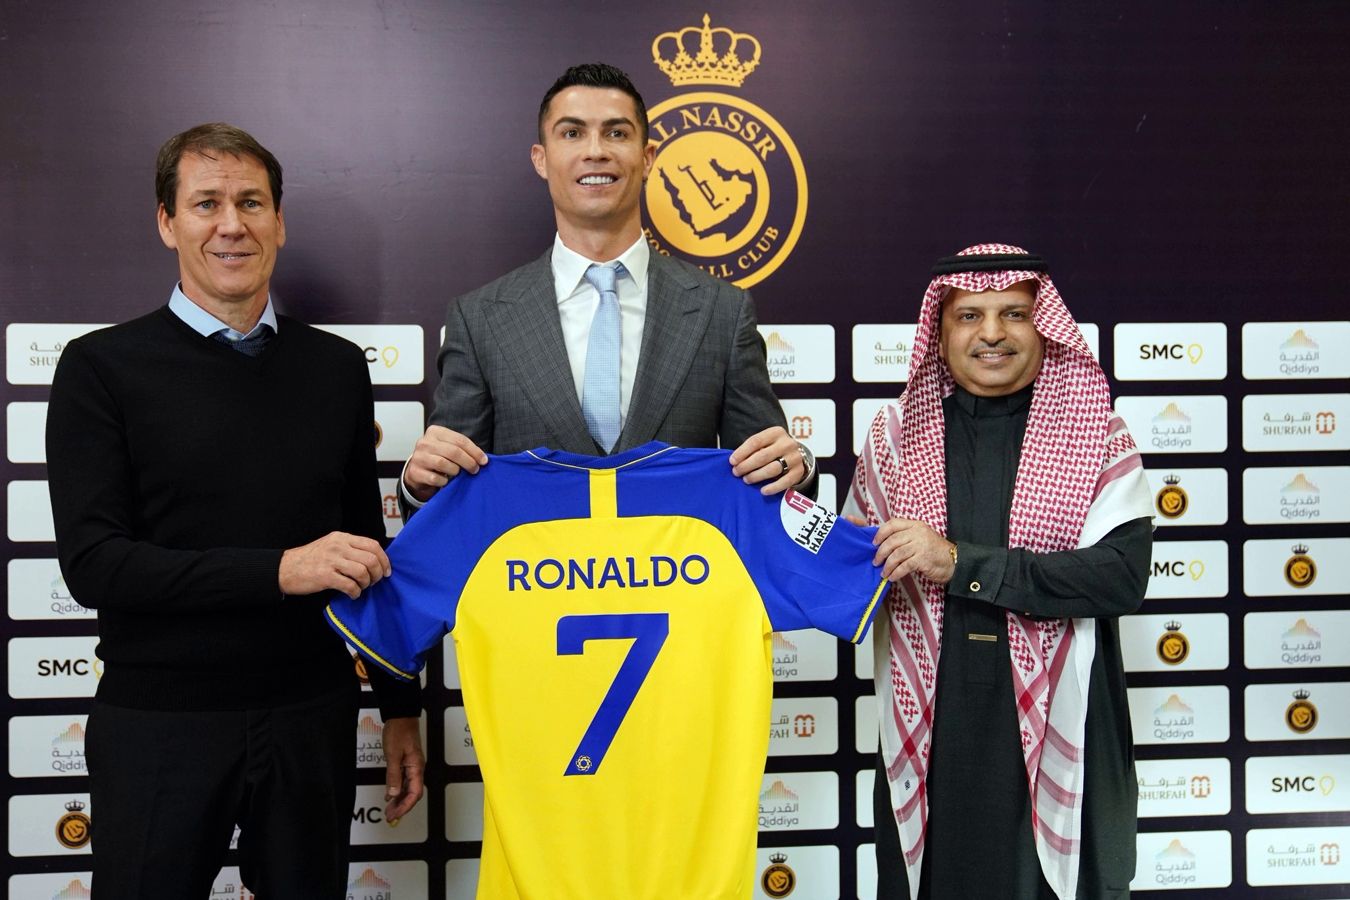 Роналду: презентация в «Аль-Насре» — один из моих лучших моментов в футболе